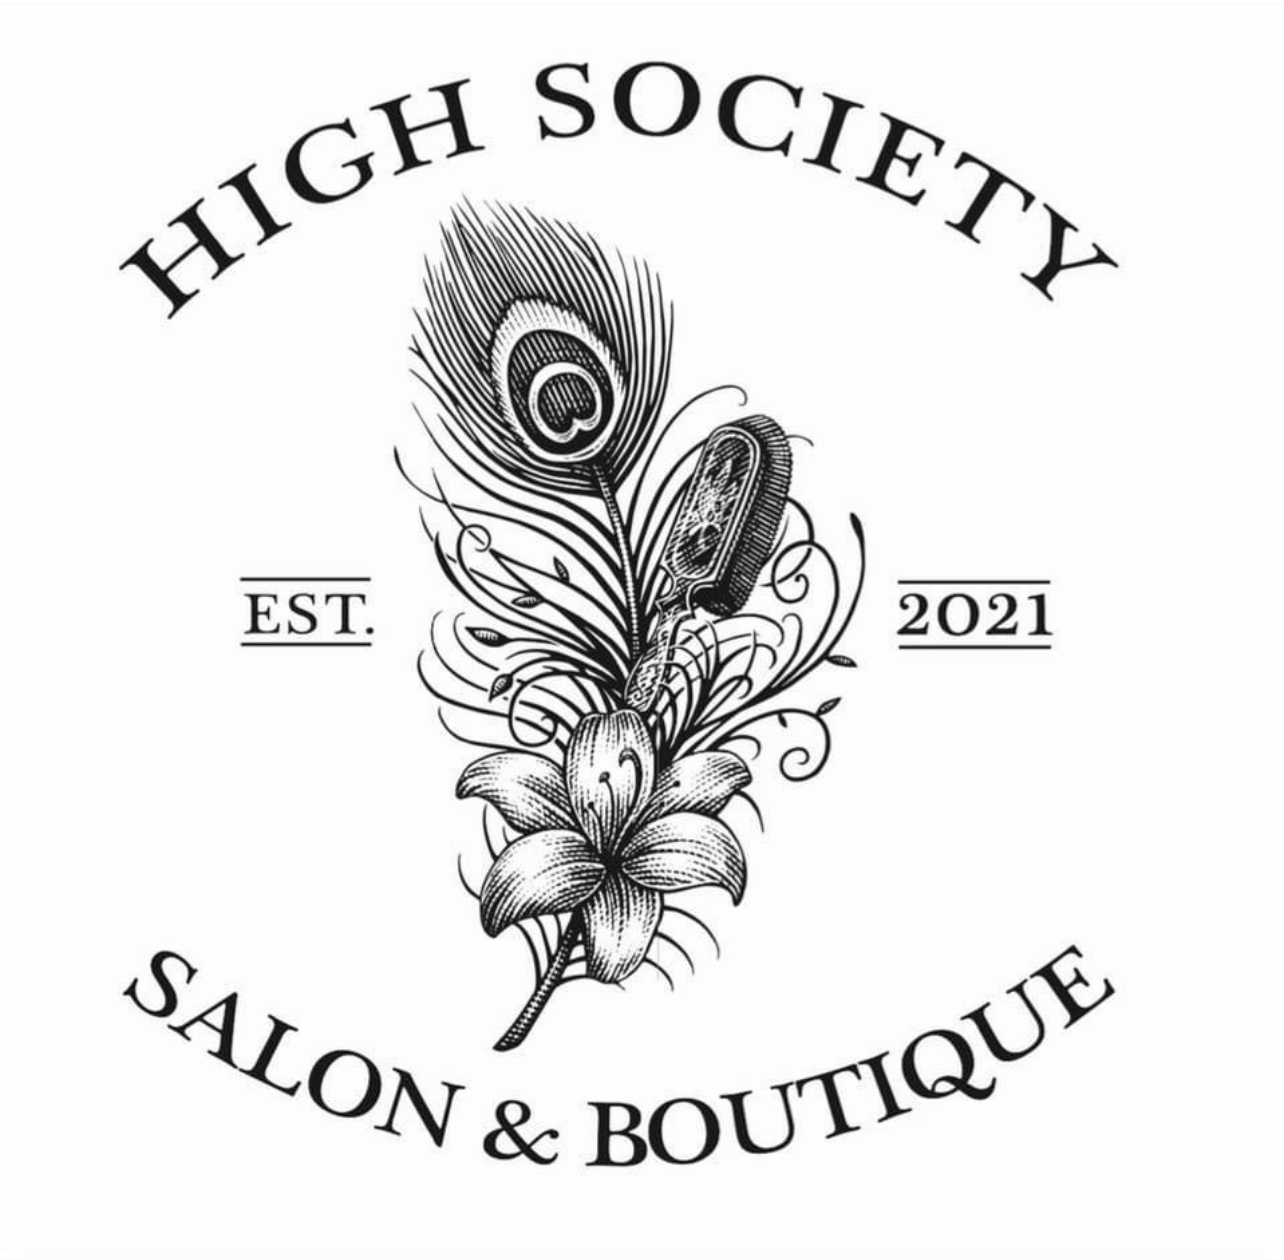 High Society Salon & Boutique